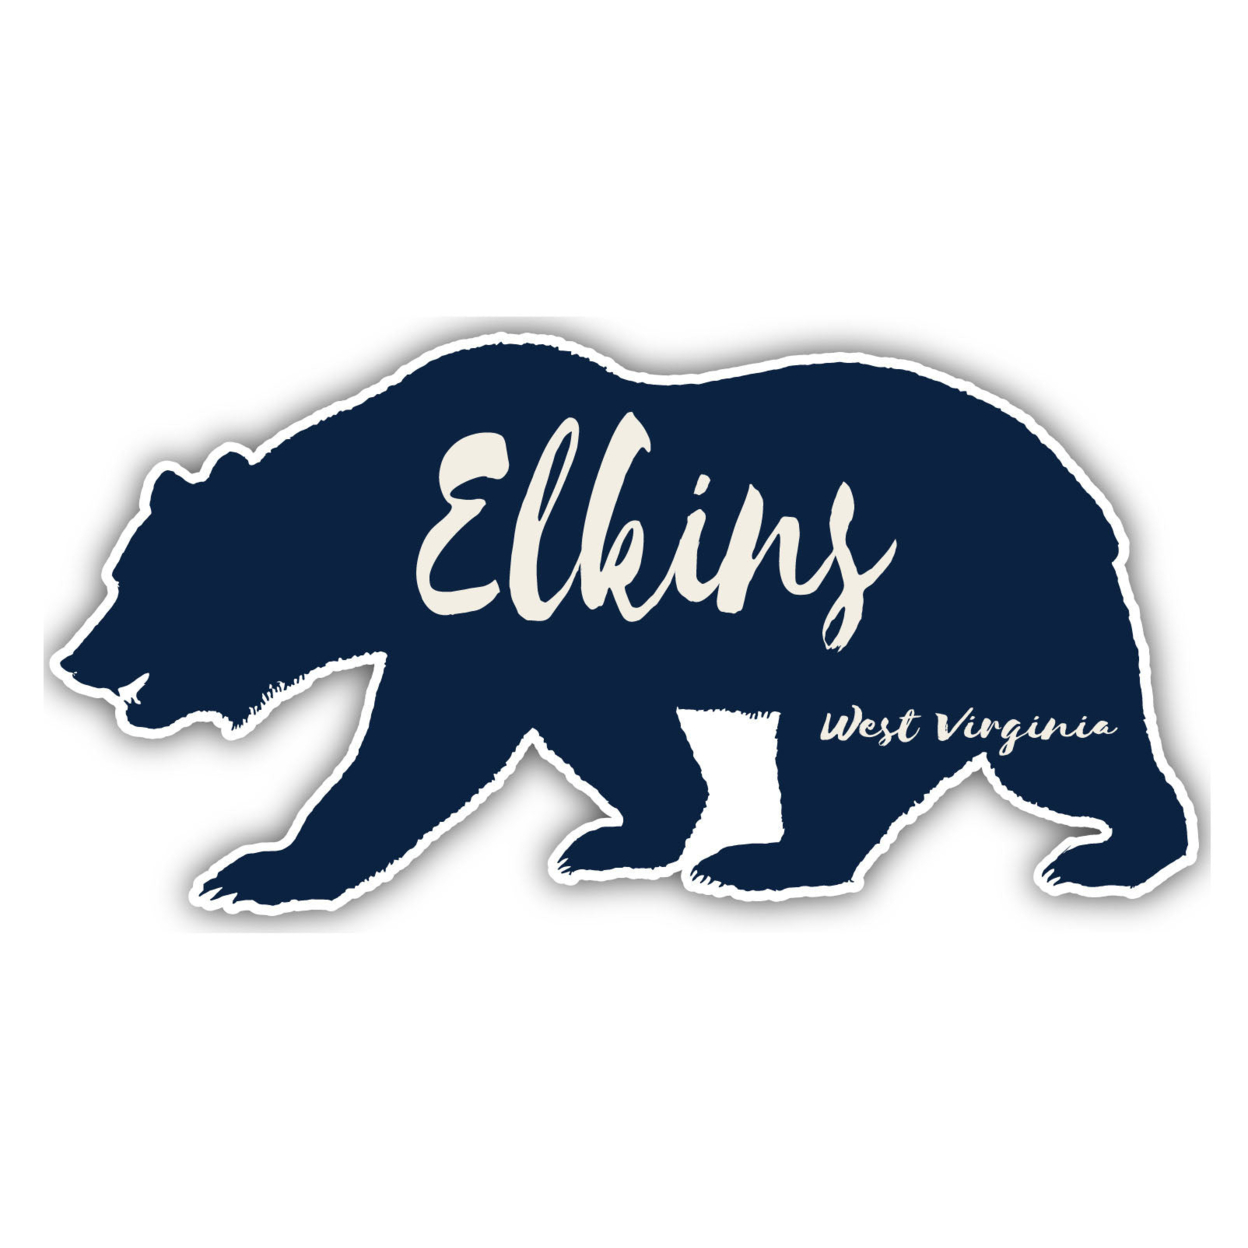 Elkins West Virginia Souvenir Decorative Stickers (Choose Theme And Size) - Single Unit, 12-Inch, Tent